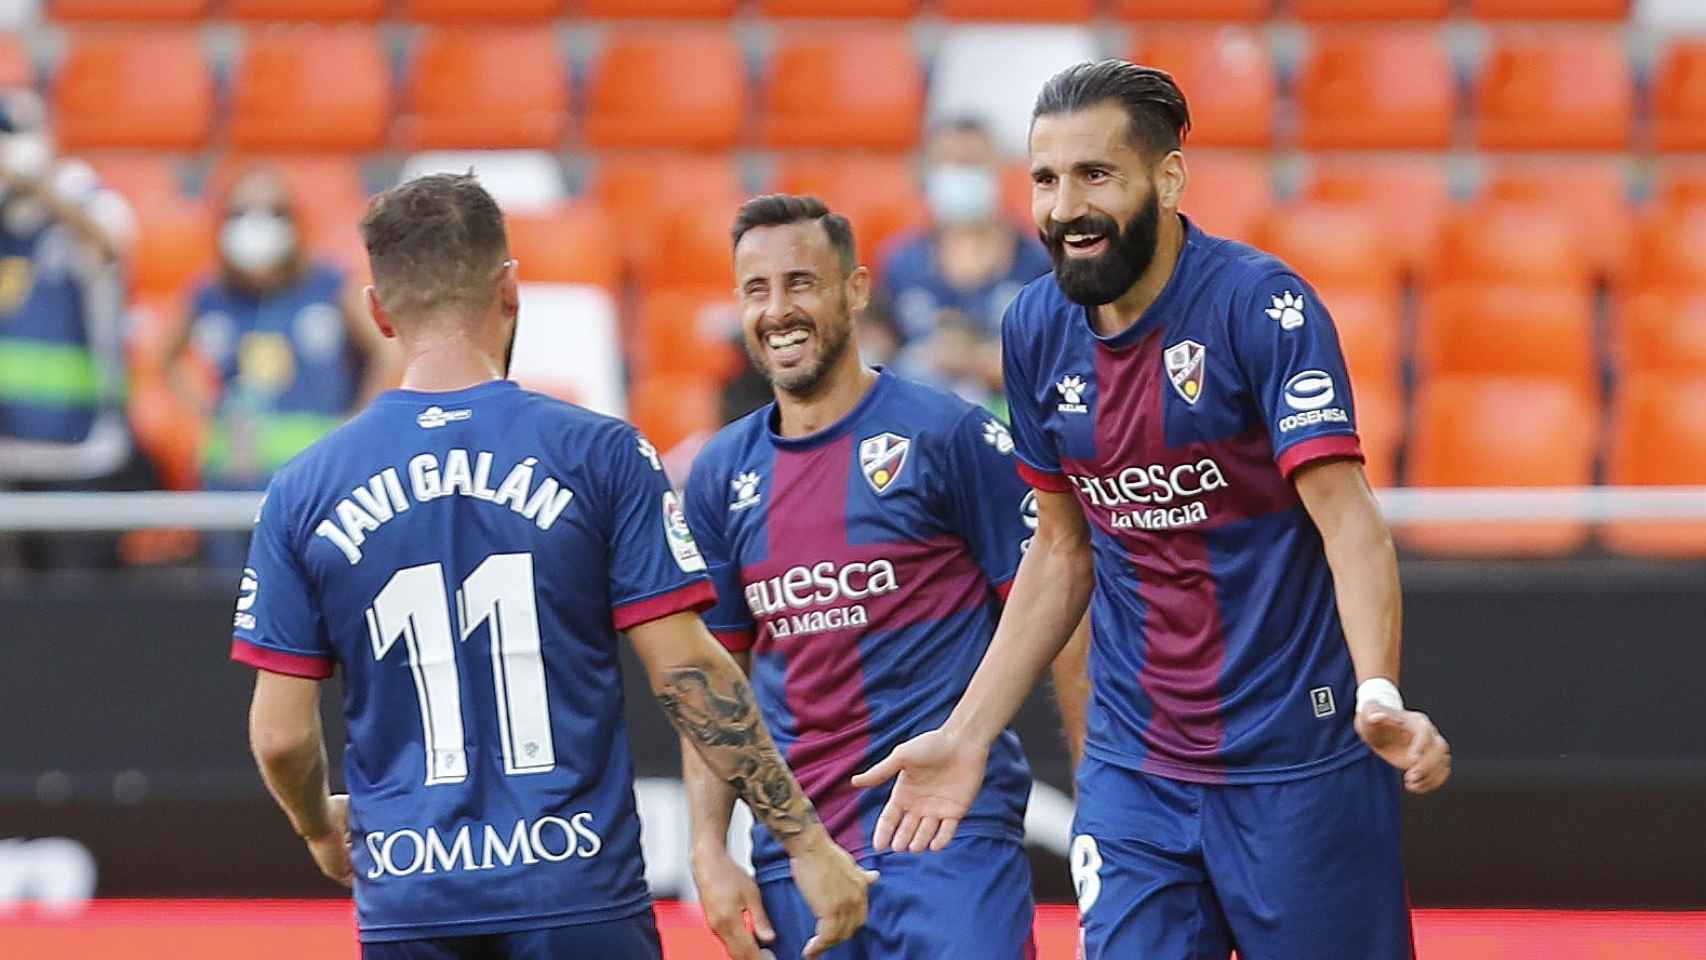 Siovas celebra el gol del Huesca ante el Valencia